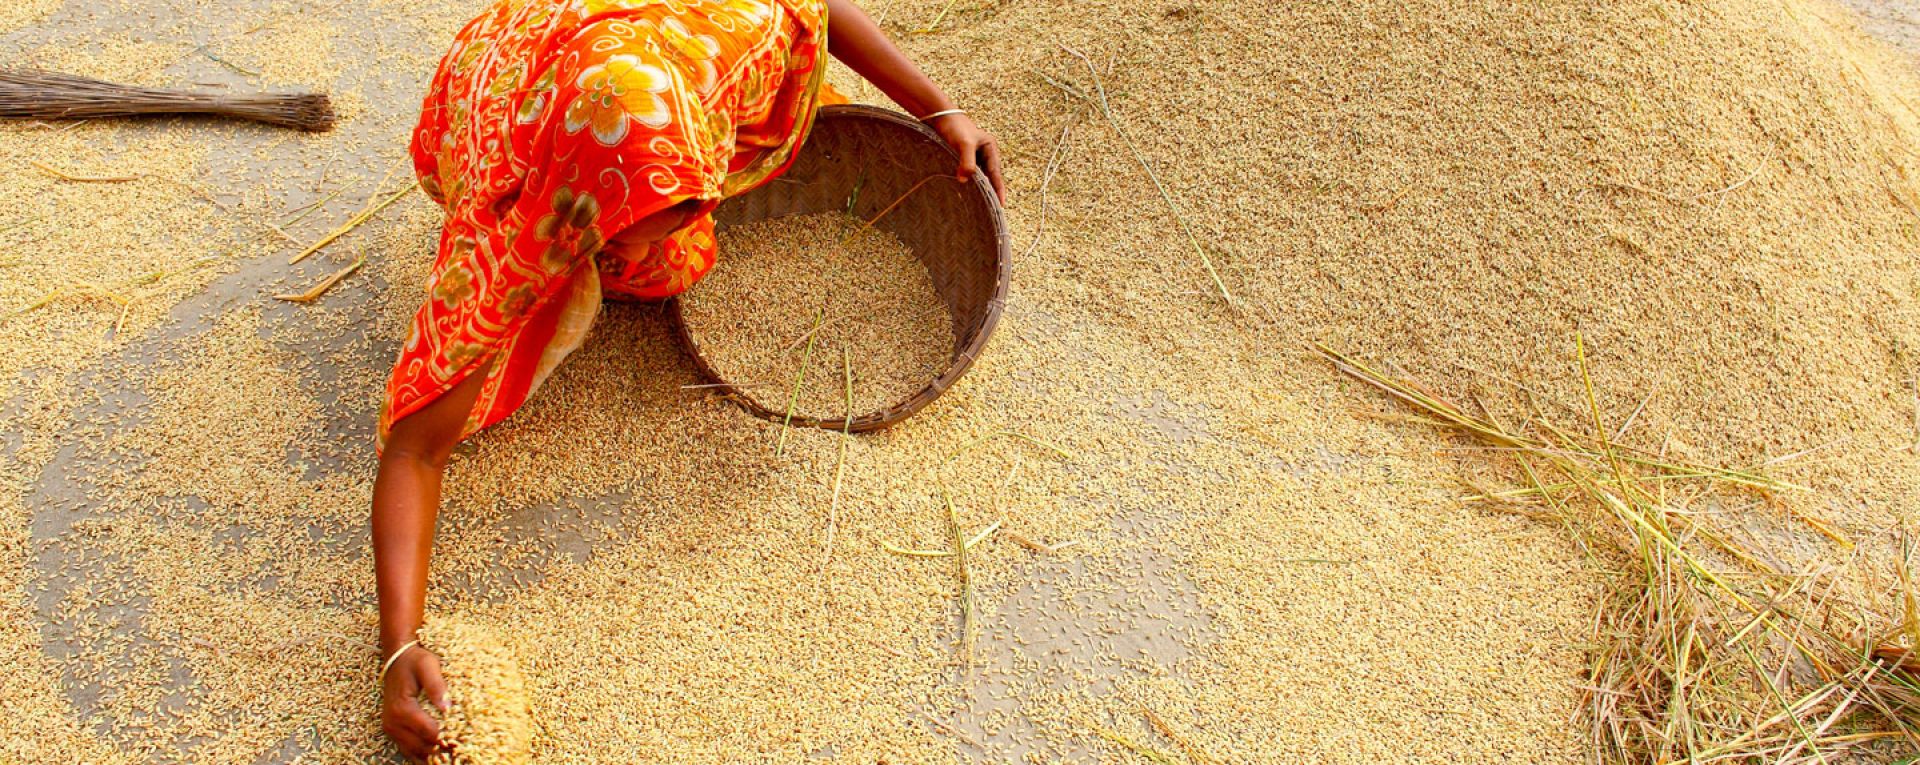 Woman gathering grain into a basket